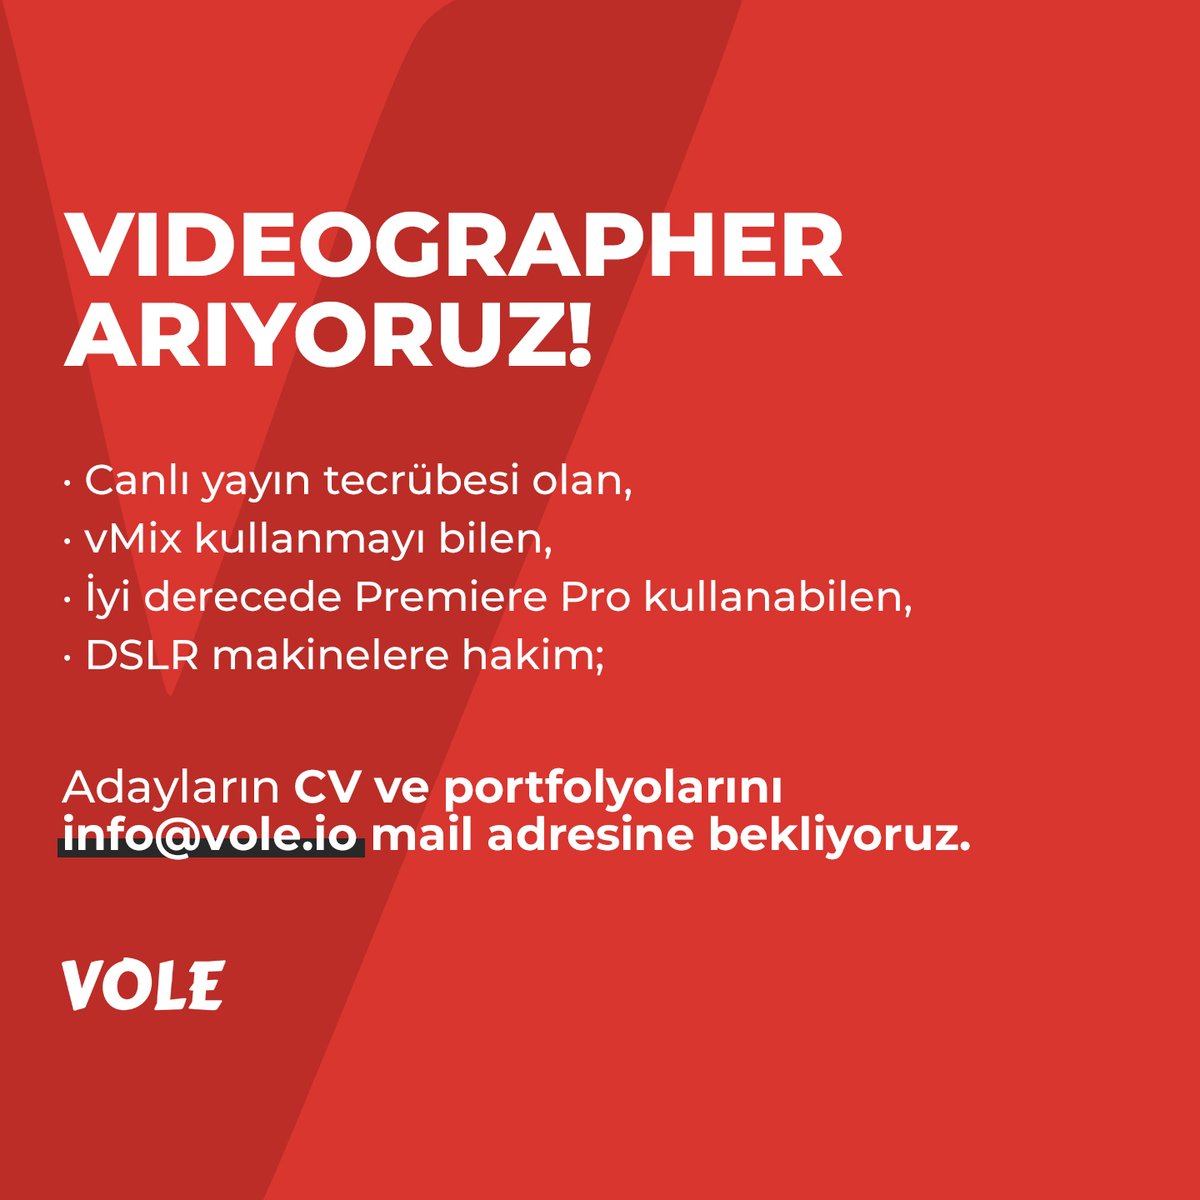 📢 Videographer arıyoruz!

📌 Canlı yayın tecrübesi olan,
📌 vMix kullanmayı bilen,
📌İyi derecede Premiere Pro kullanabilen,
📌DSLR makinelere hakim;

🗒 adayların CV ve portfolyolarını info@vole.io mail adresine bekliyoruz.